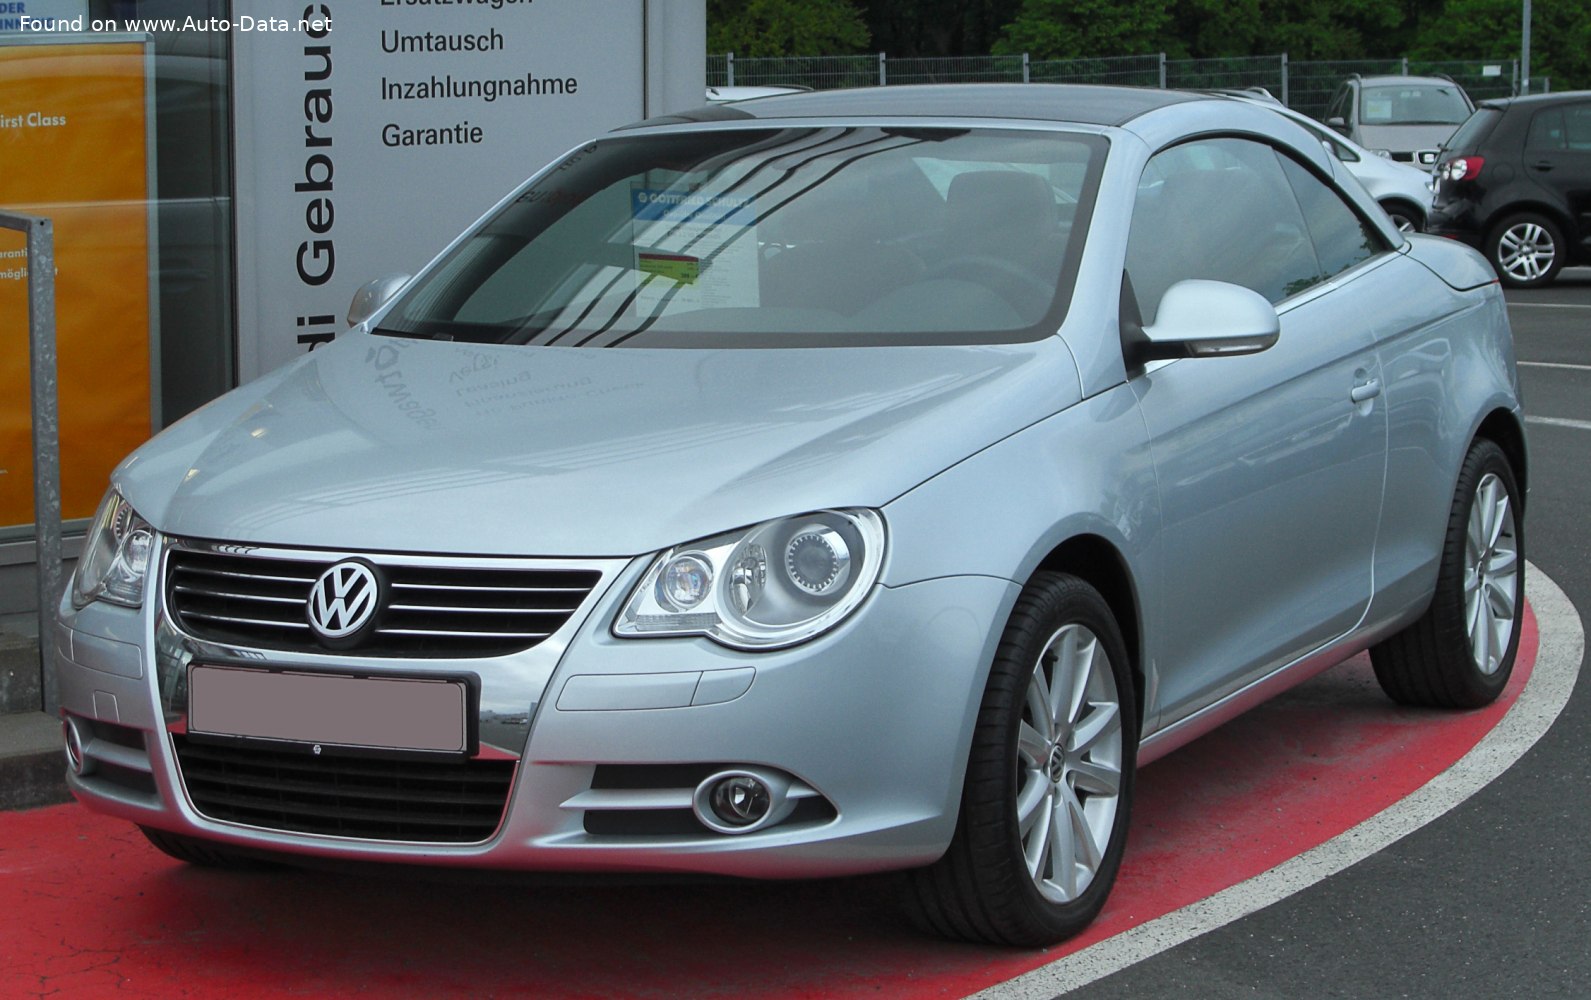 Eos - Volkswagen